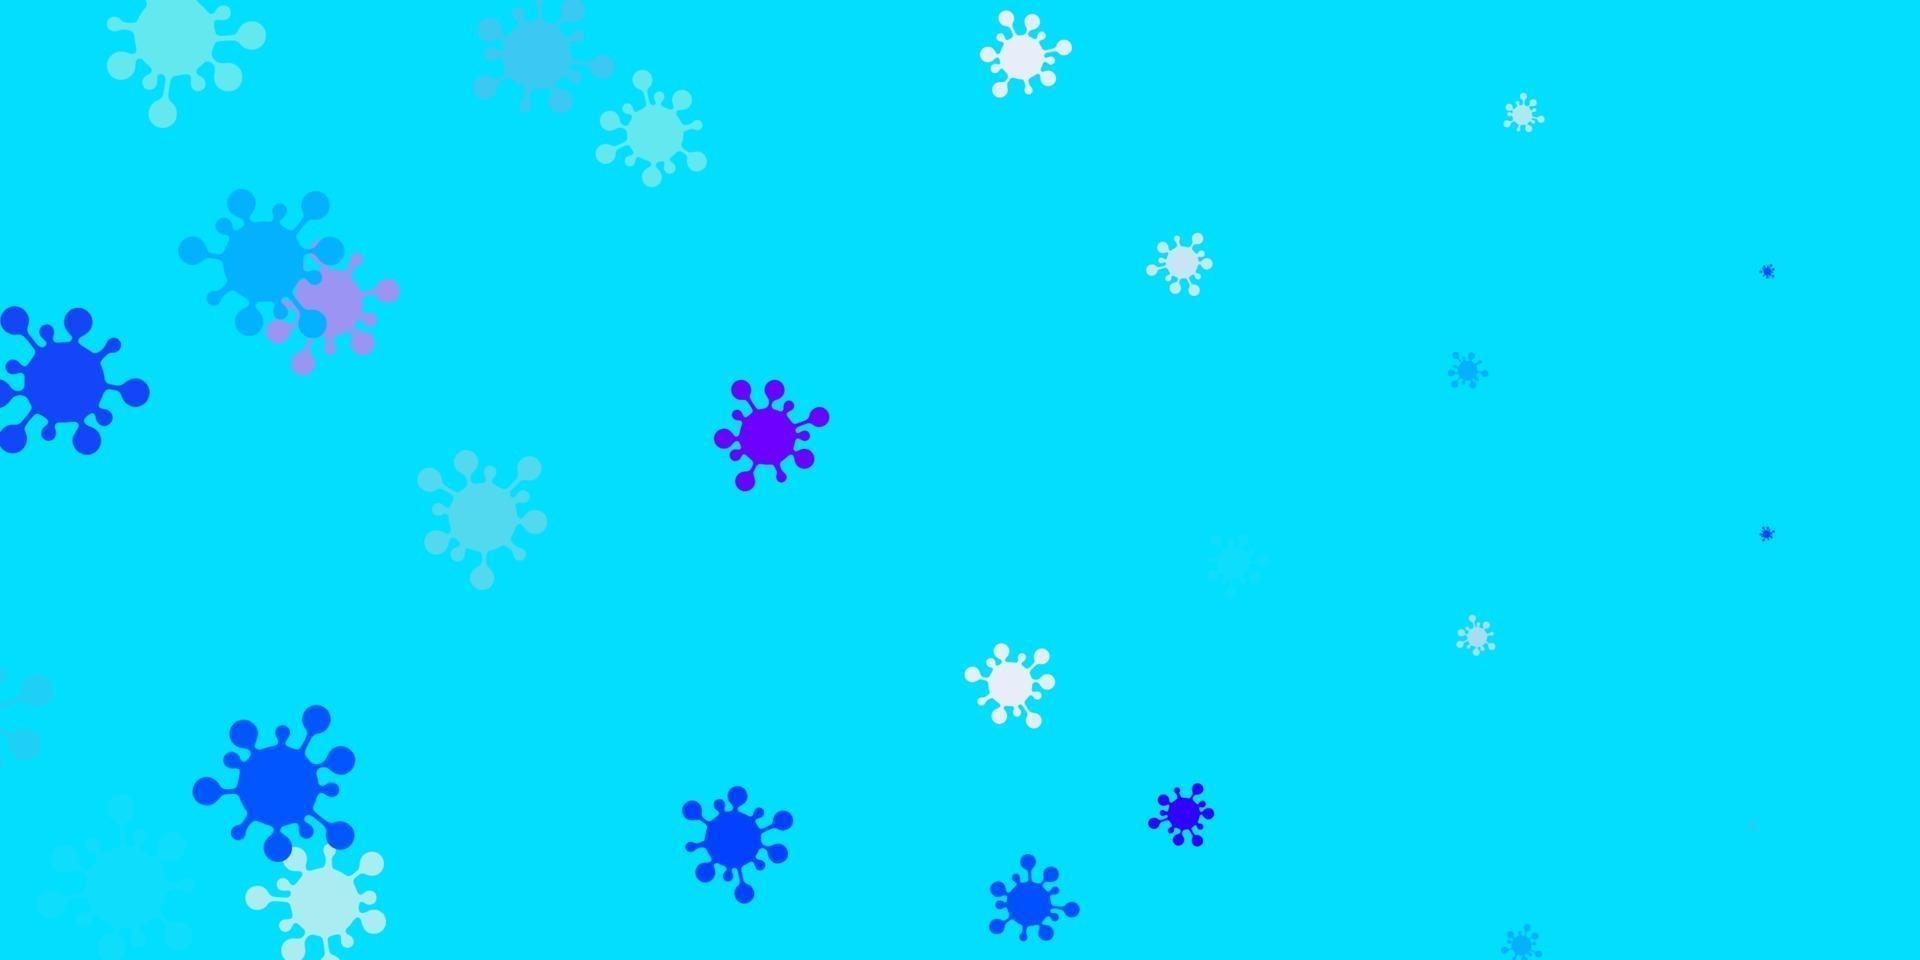 toile de fond de vecteur rose clair, bleu avec symboles de virus.